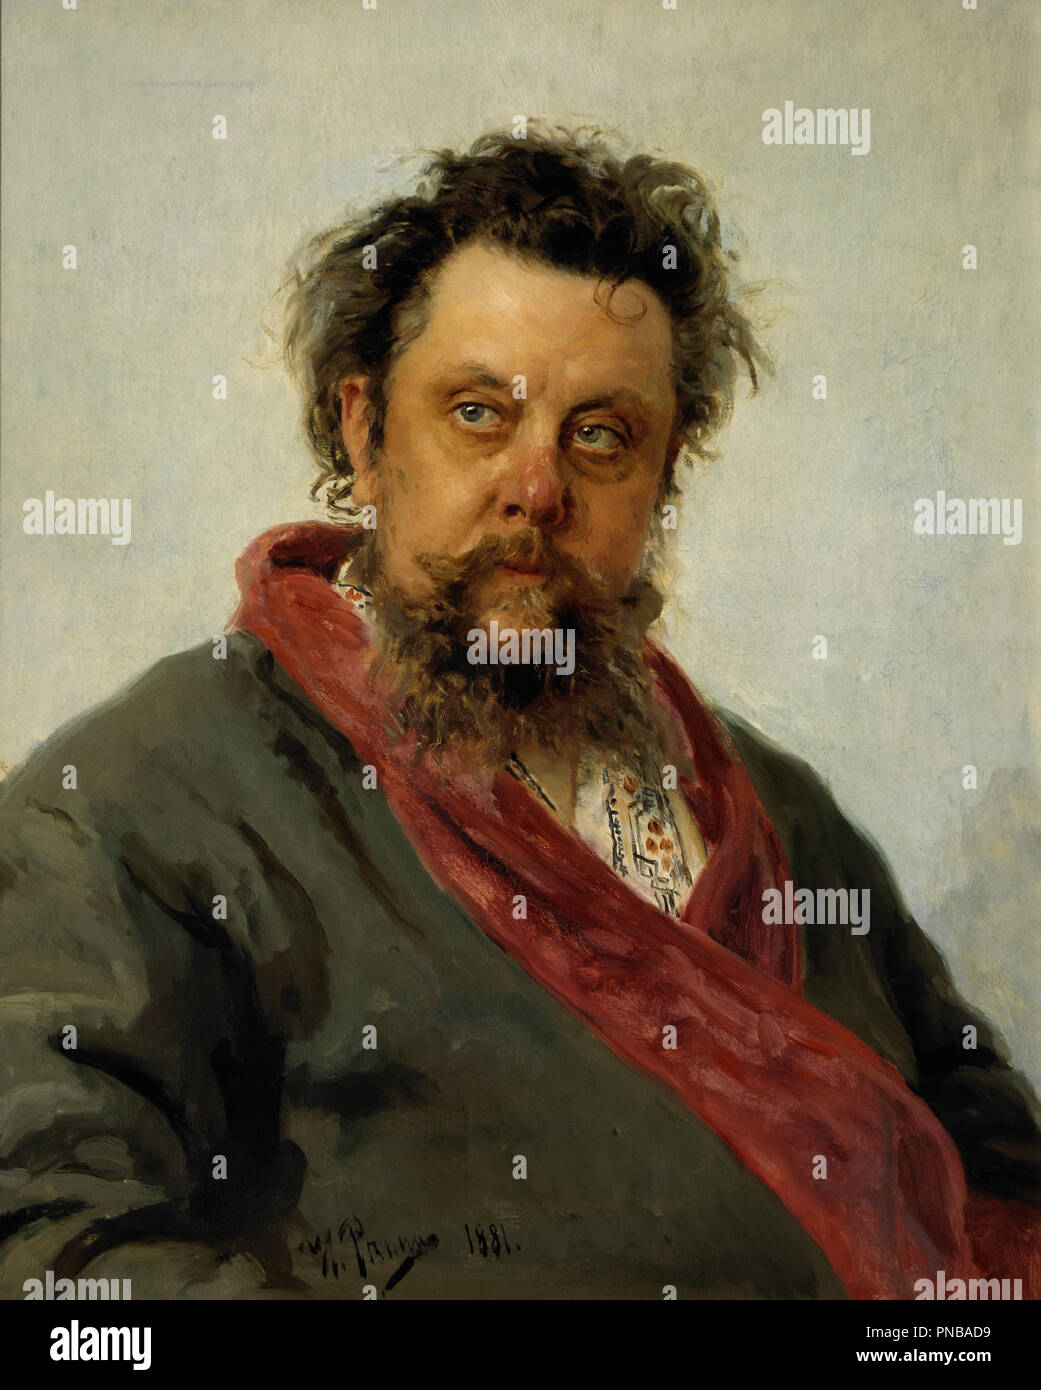 Ritratto di M. P. Musorgsky. Data/Periodo: 1881. La pittura. Olio su tela. Altezza: 69 cm (27,1 in); larghezza: 57 cm (22,4 in). Autore: Ilya Repin. REPIN, ILYA YEFIMOVICH. Foto Stock